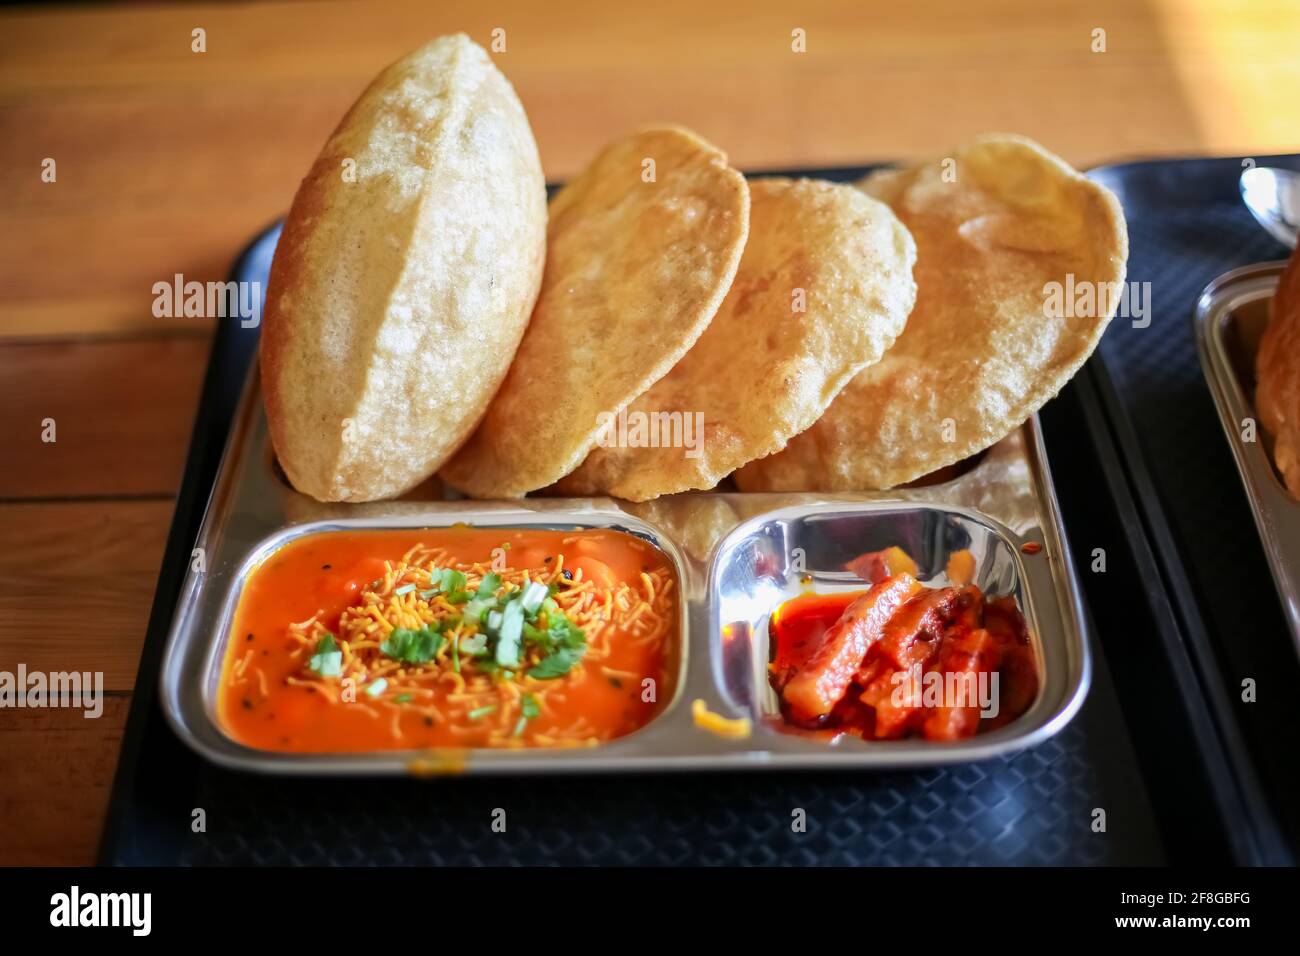 Puri Sabji oder Poori Sabzi. Indischer Snack. Indisches gebratenes Brot serviert mit würzigem Gemüsepfarsich und würzigen Gurken. Köstlich aussehendes indisches Essen. Diese t Stockfoto